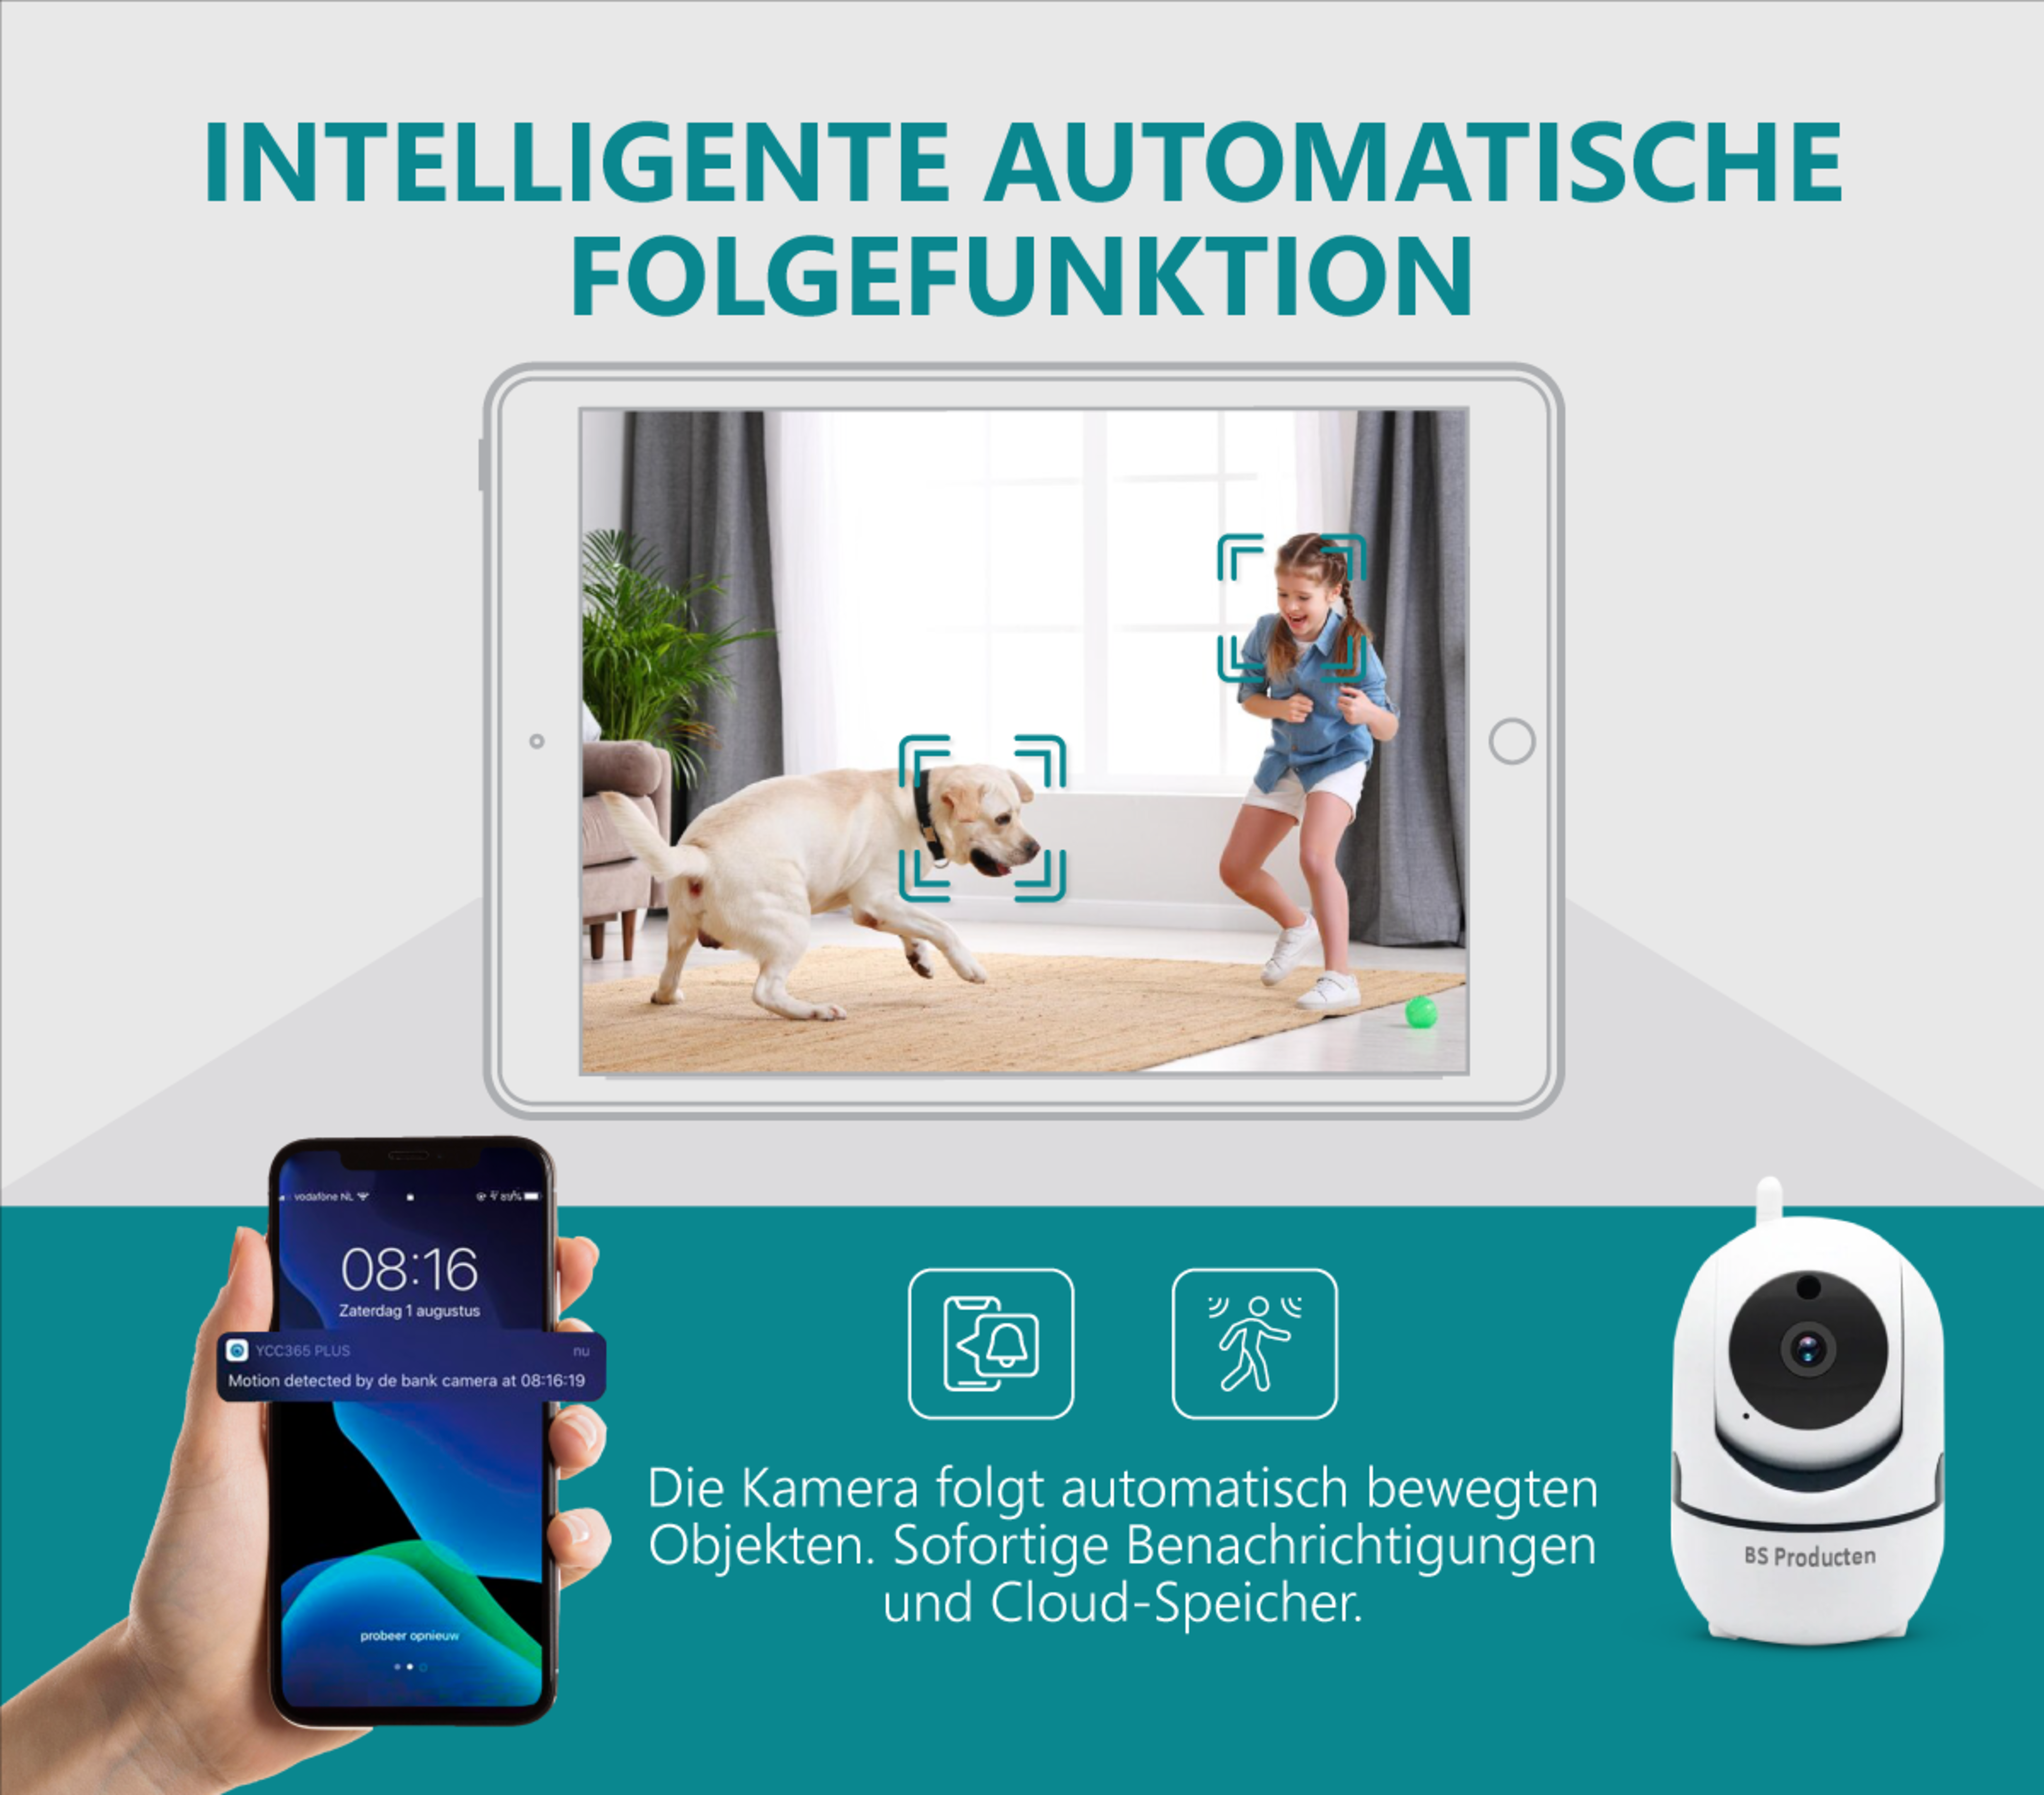 BS PRODUCTEN Hunde und Babyphone IP GHz Überwachungskamera mit 2,4 Weiß, camera WLAN Innen kamera mit App